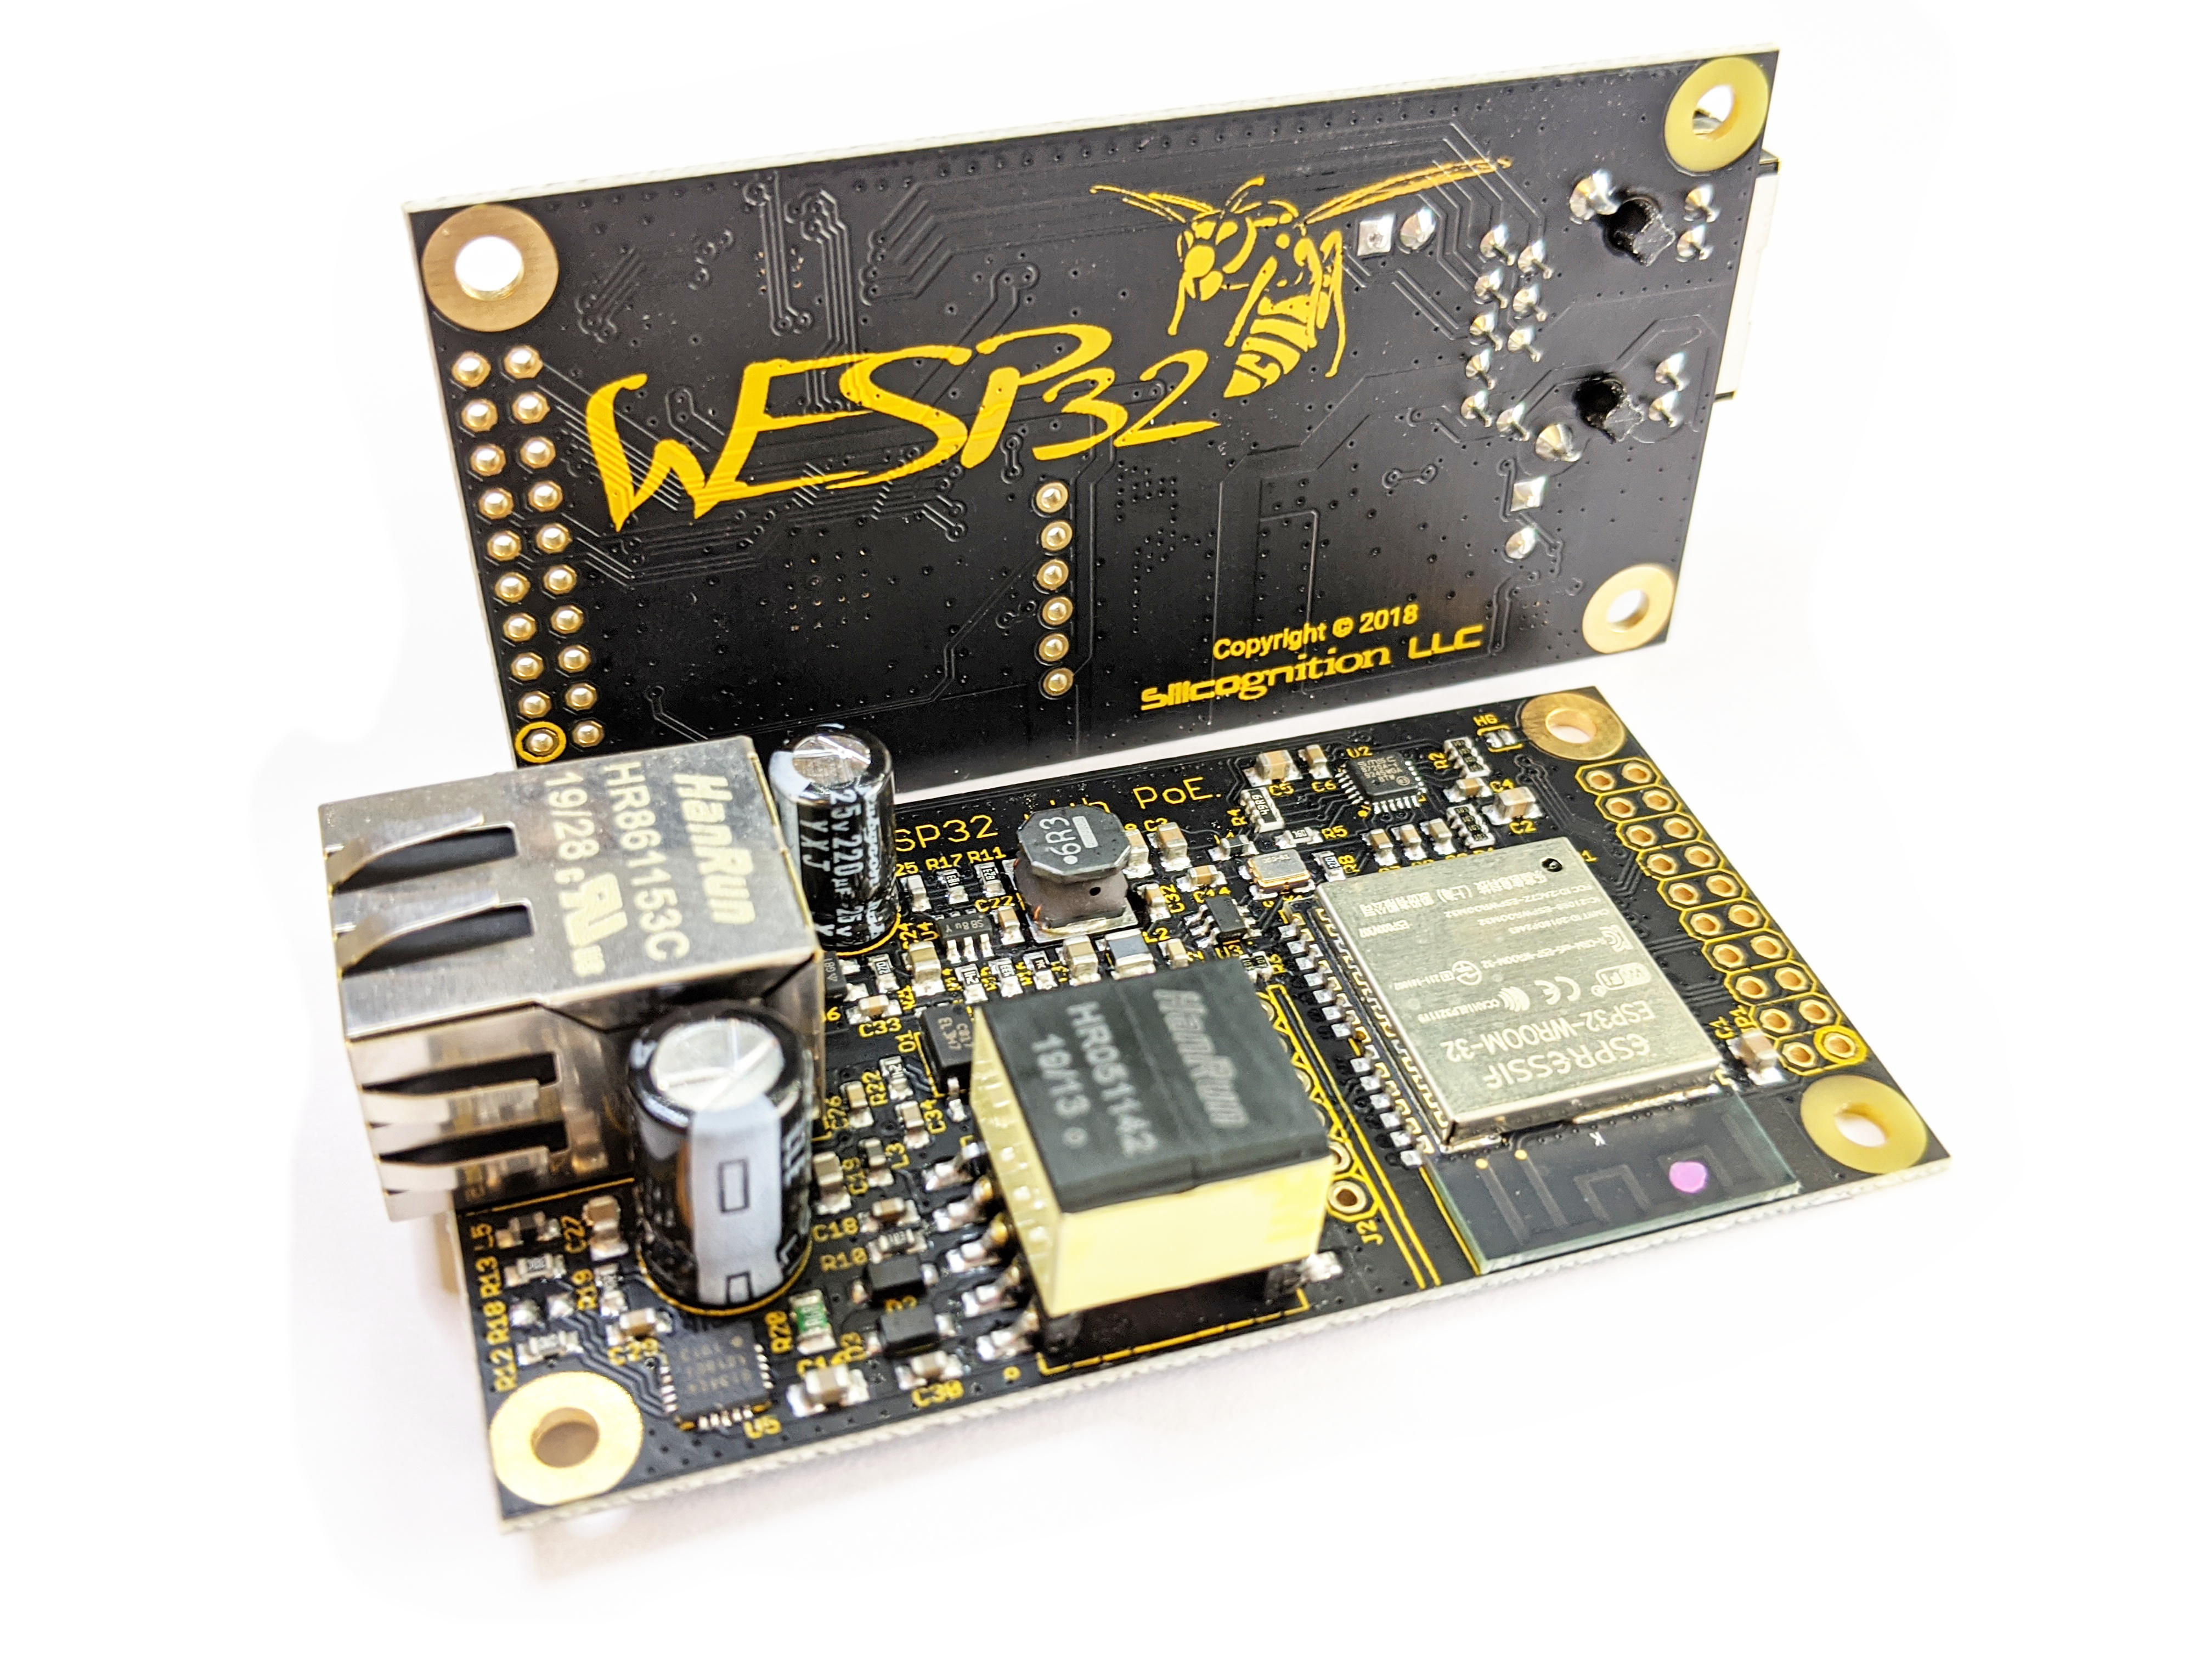 wESP32 product image